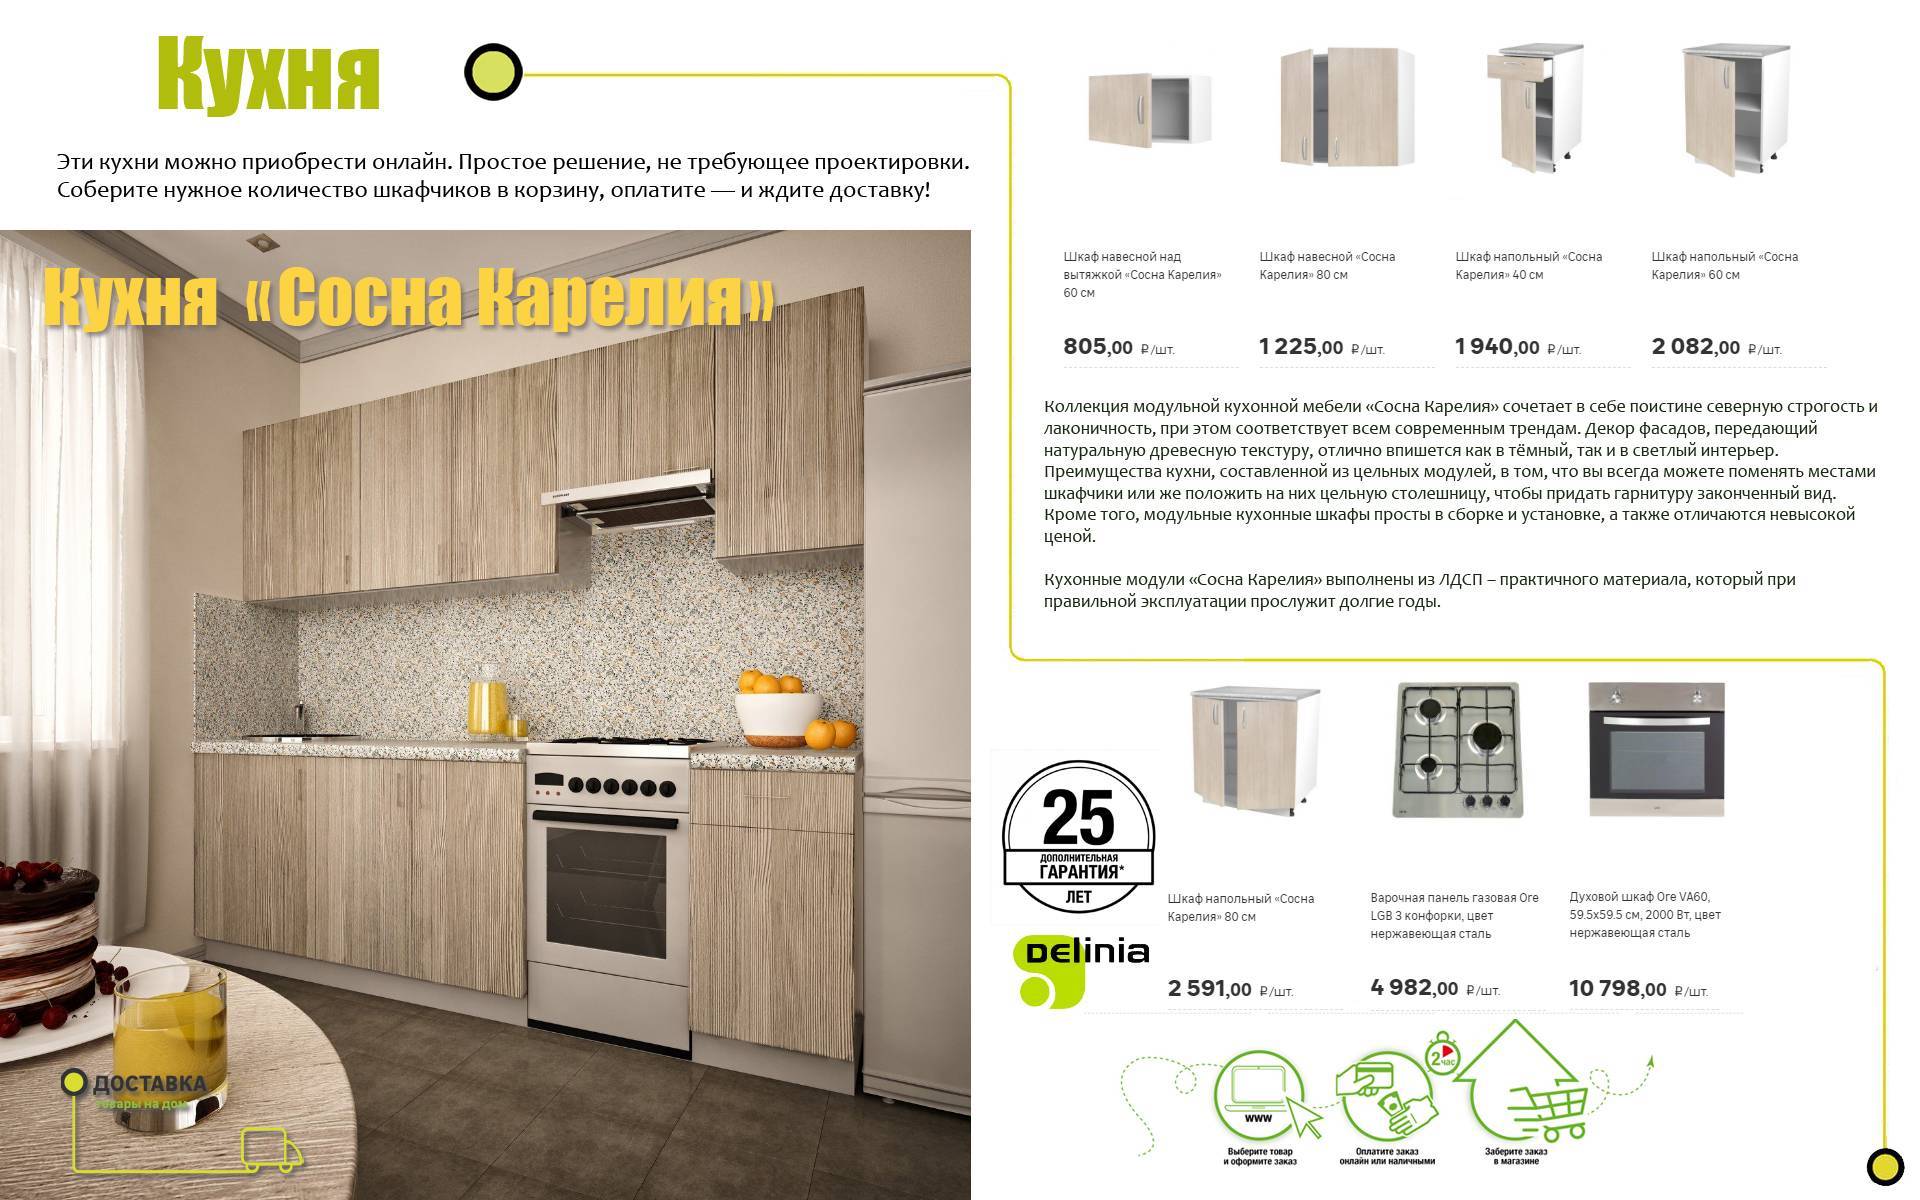 Обзор модульных кухонь от леруа мерлен: достоинства и недостатки